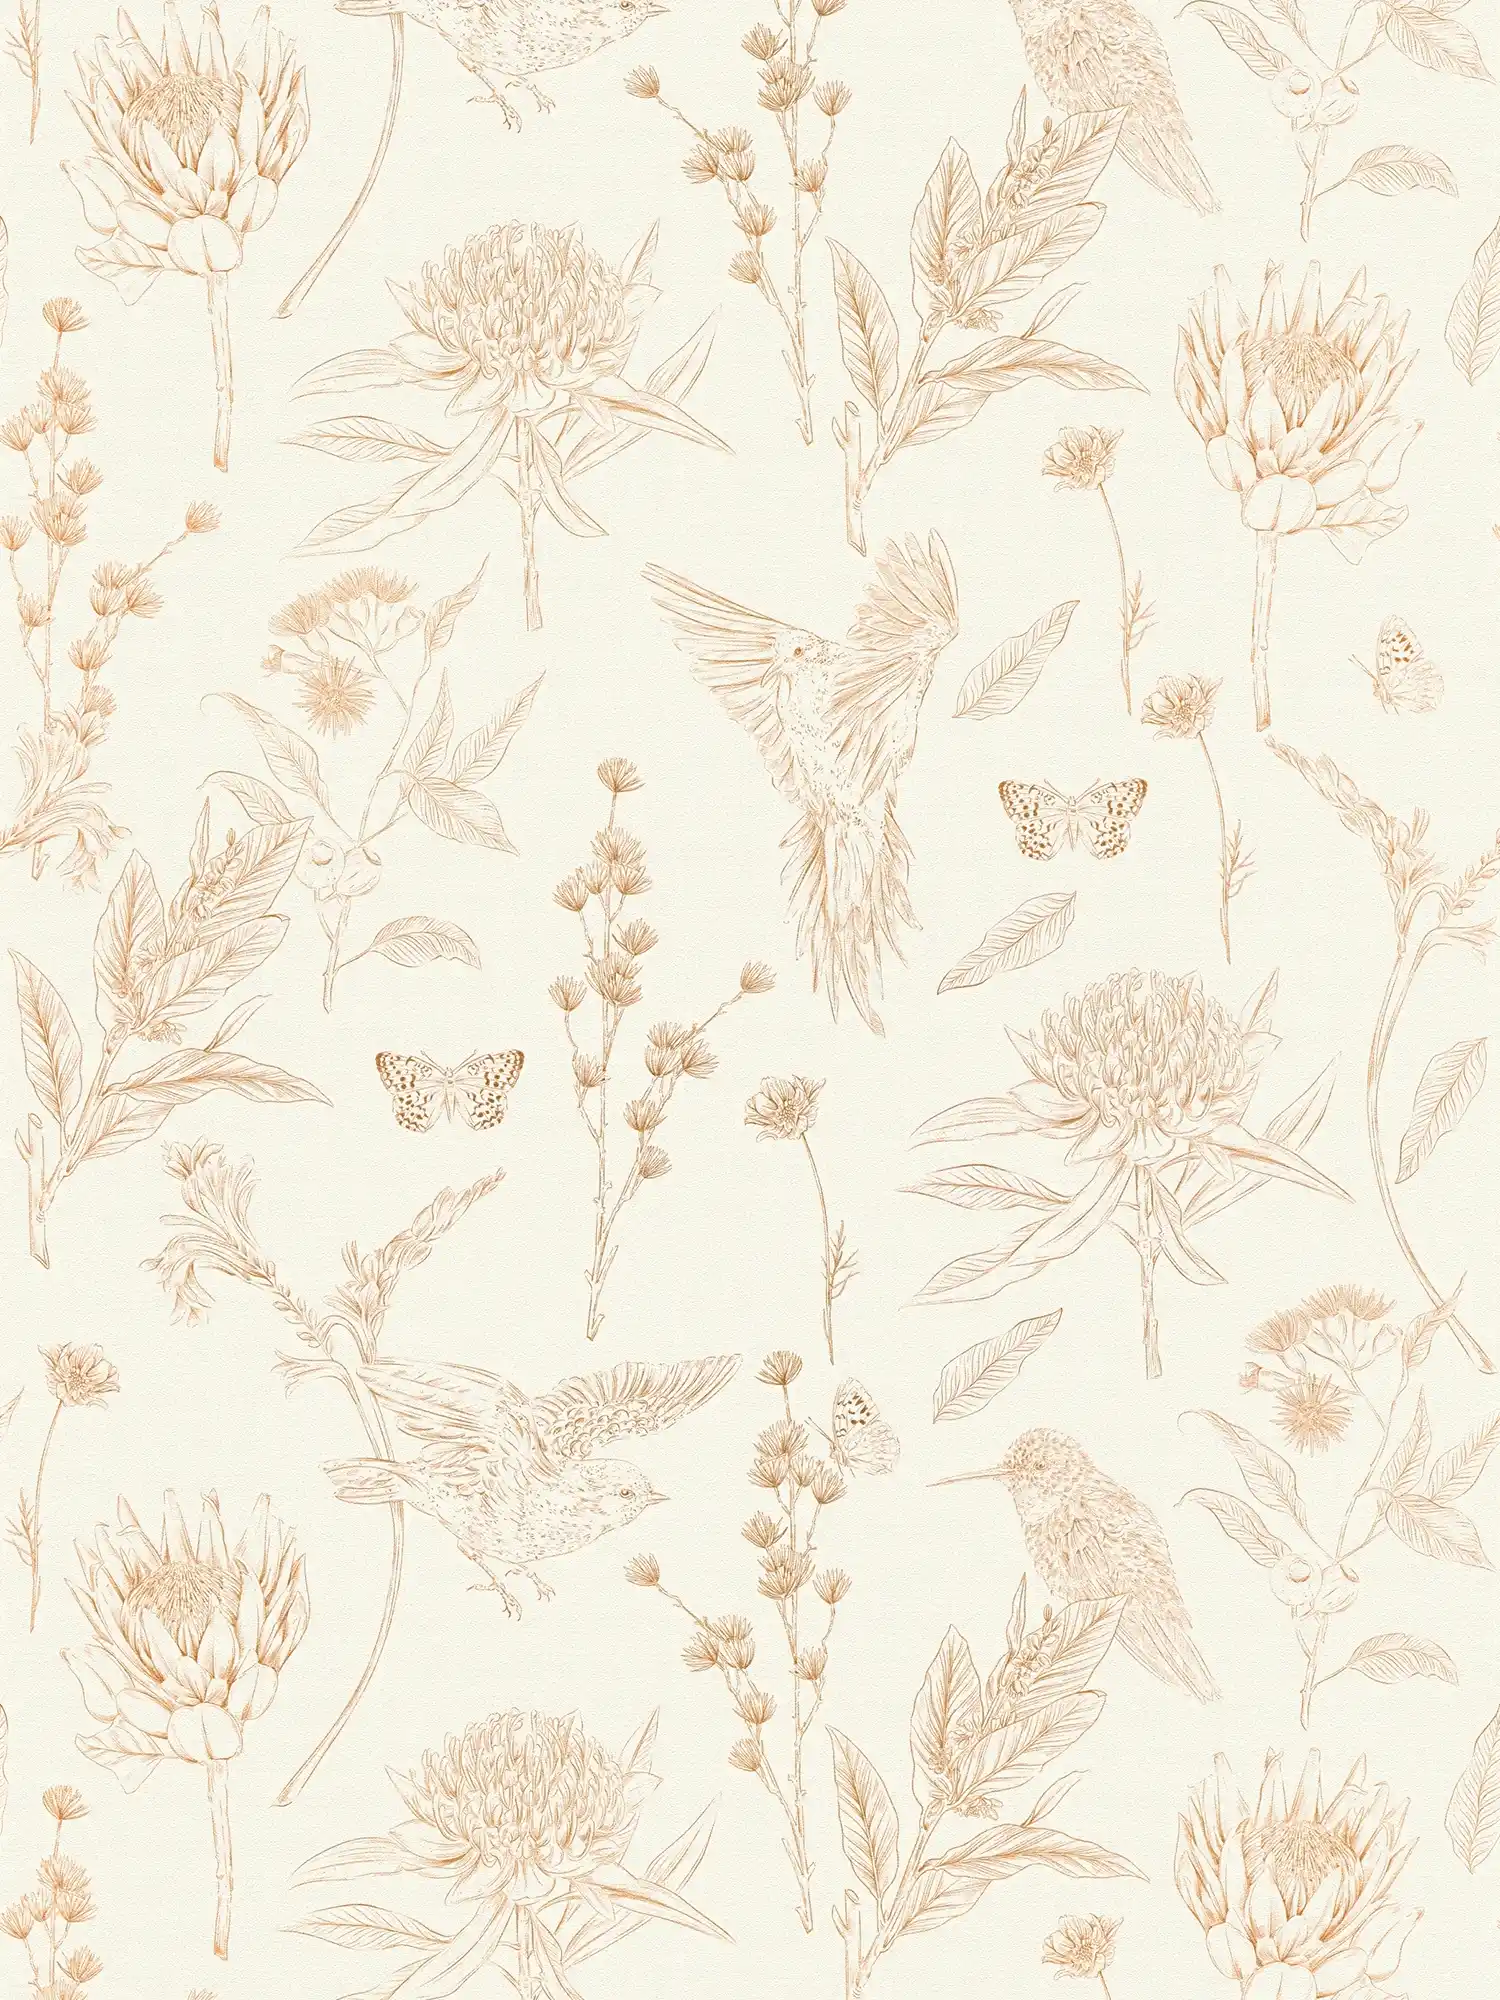 Florale Tapete mit Blättern & Tieren strukturiert matt – Weiß, Braun, Beige
